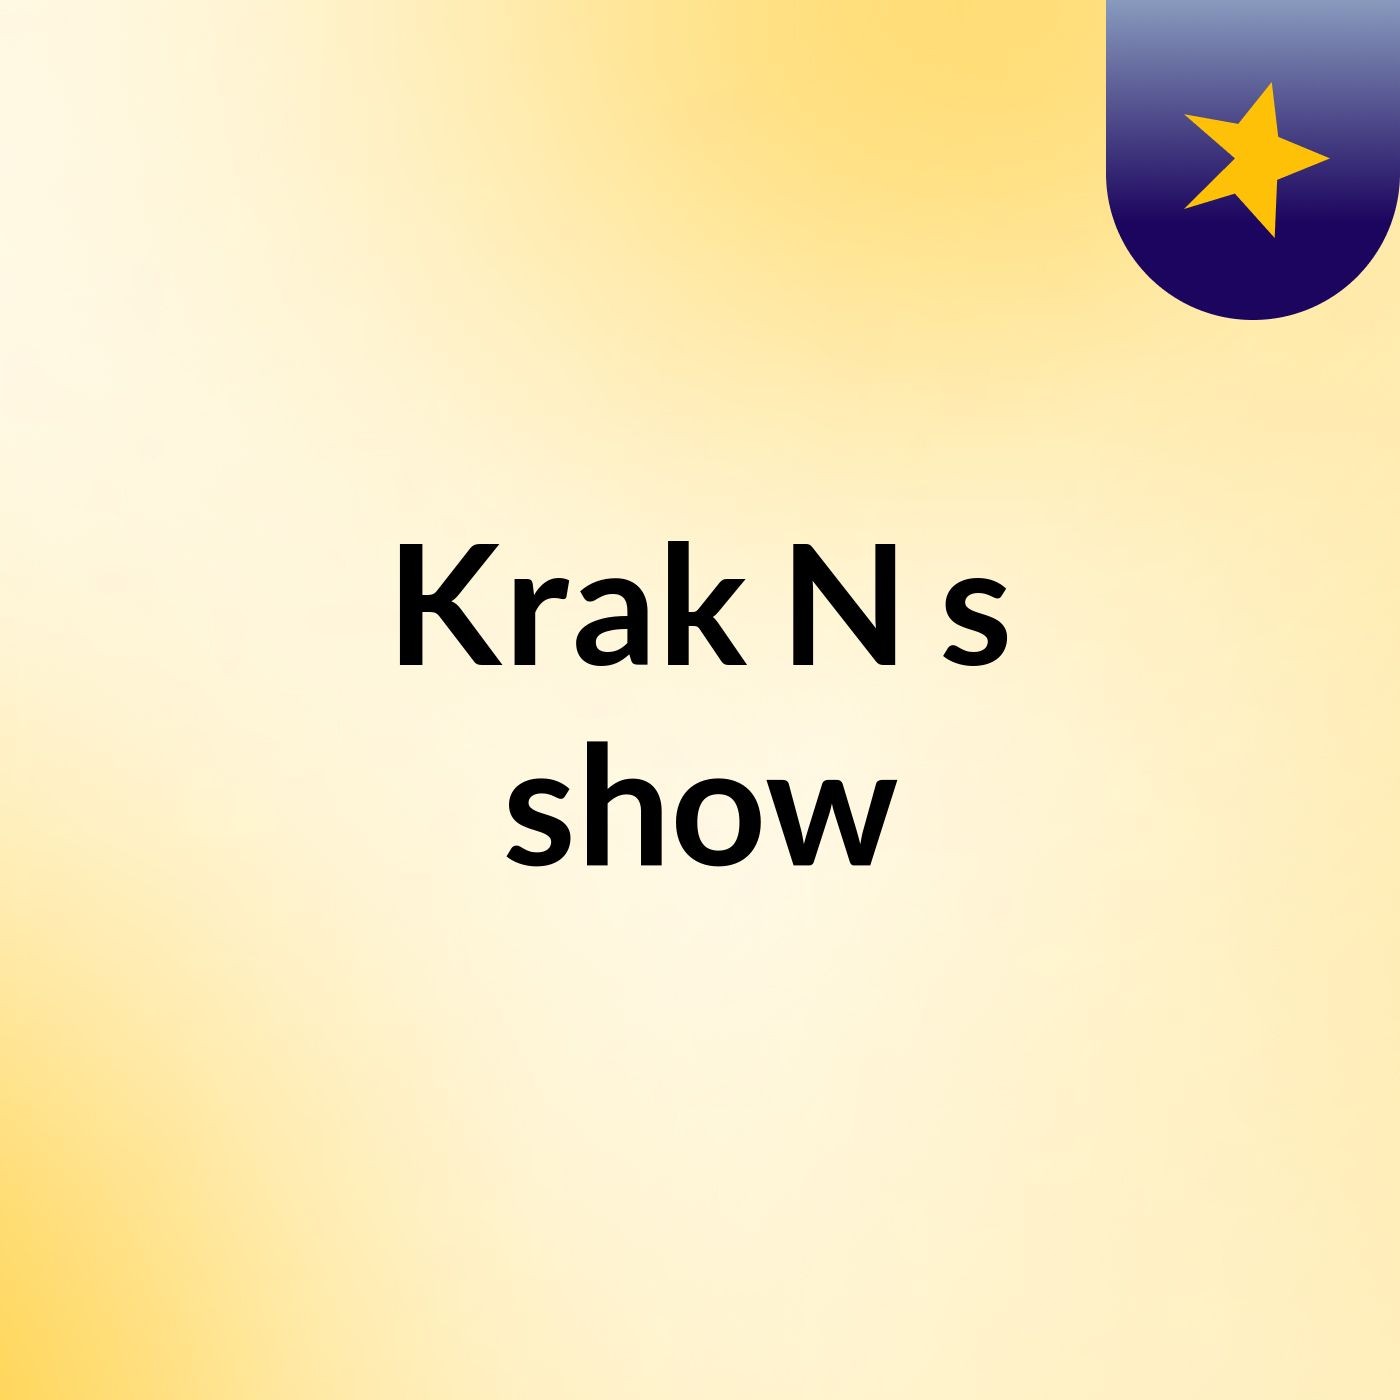 Krak'N's show